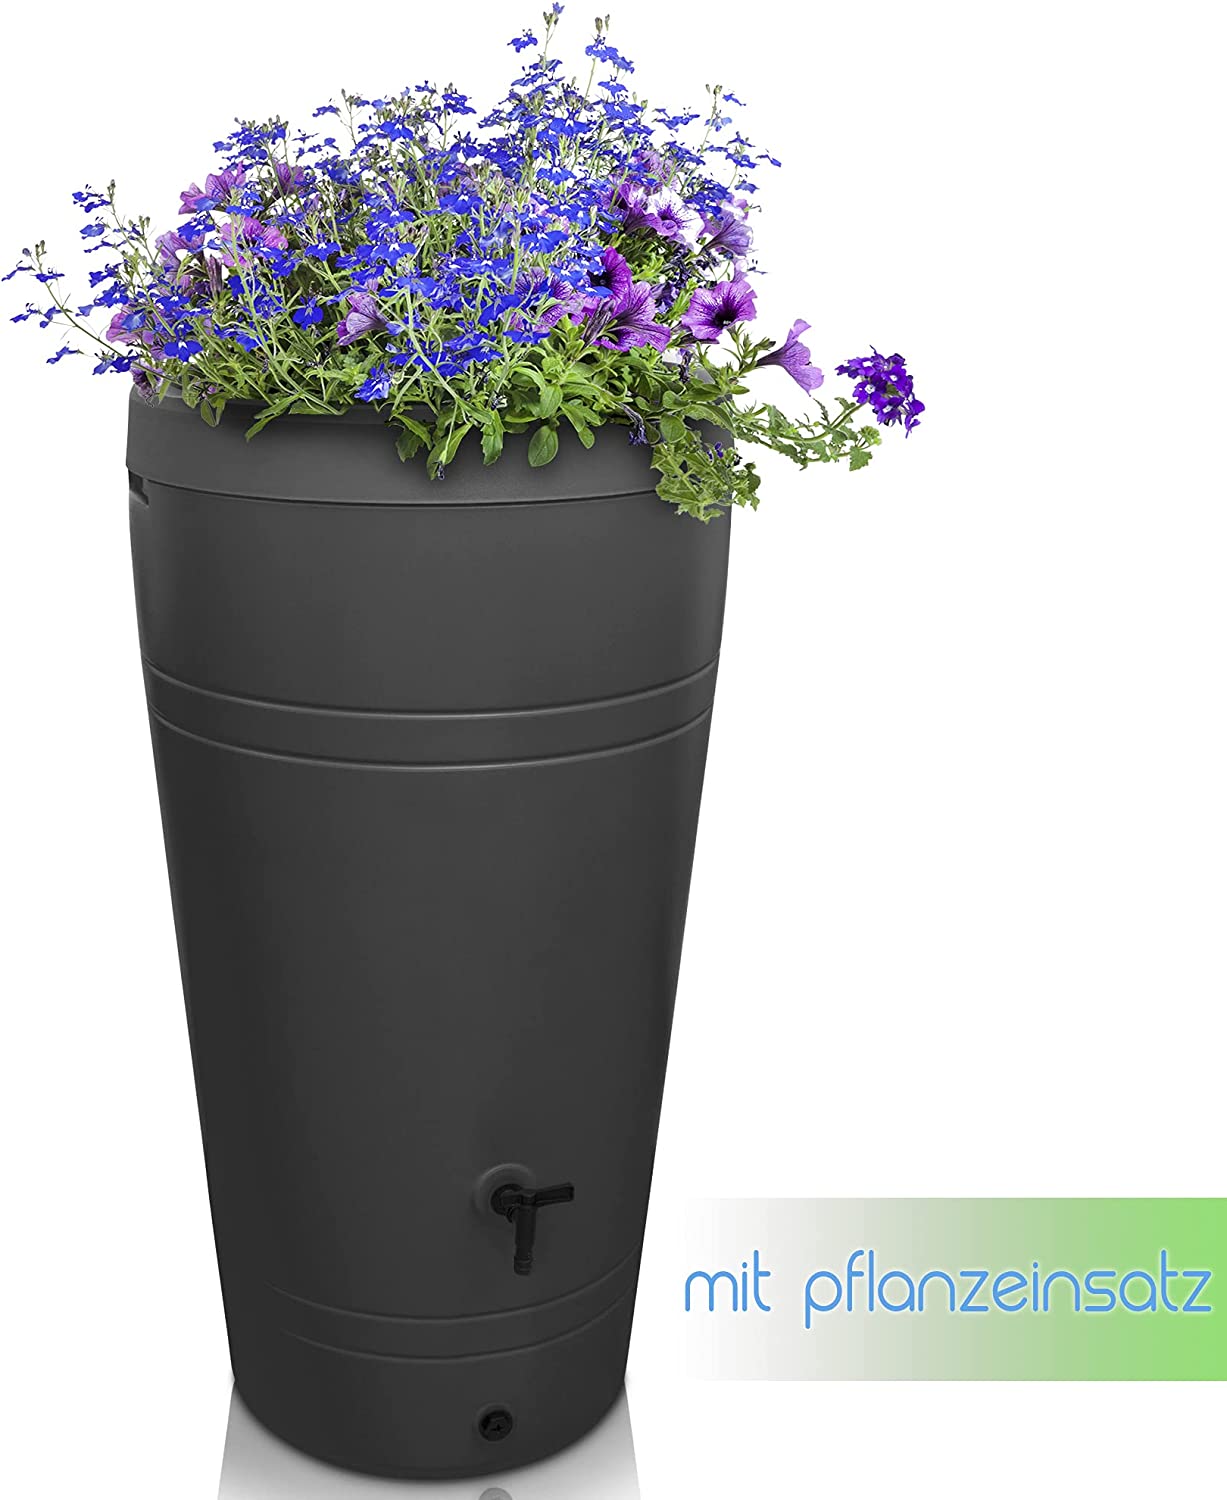 Ein selbstbewässernder Blumentopf mit violetten Blüten, konzipiert zum Sammeln von YourCasa Regentonne 230 Liter [Decore Design] - Nachhaltige Bewässerung im Garten.